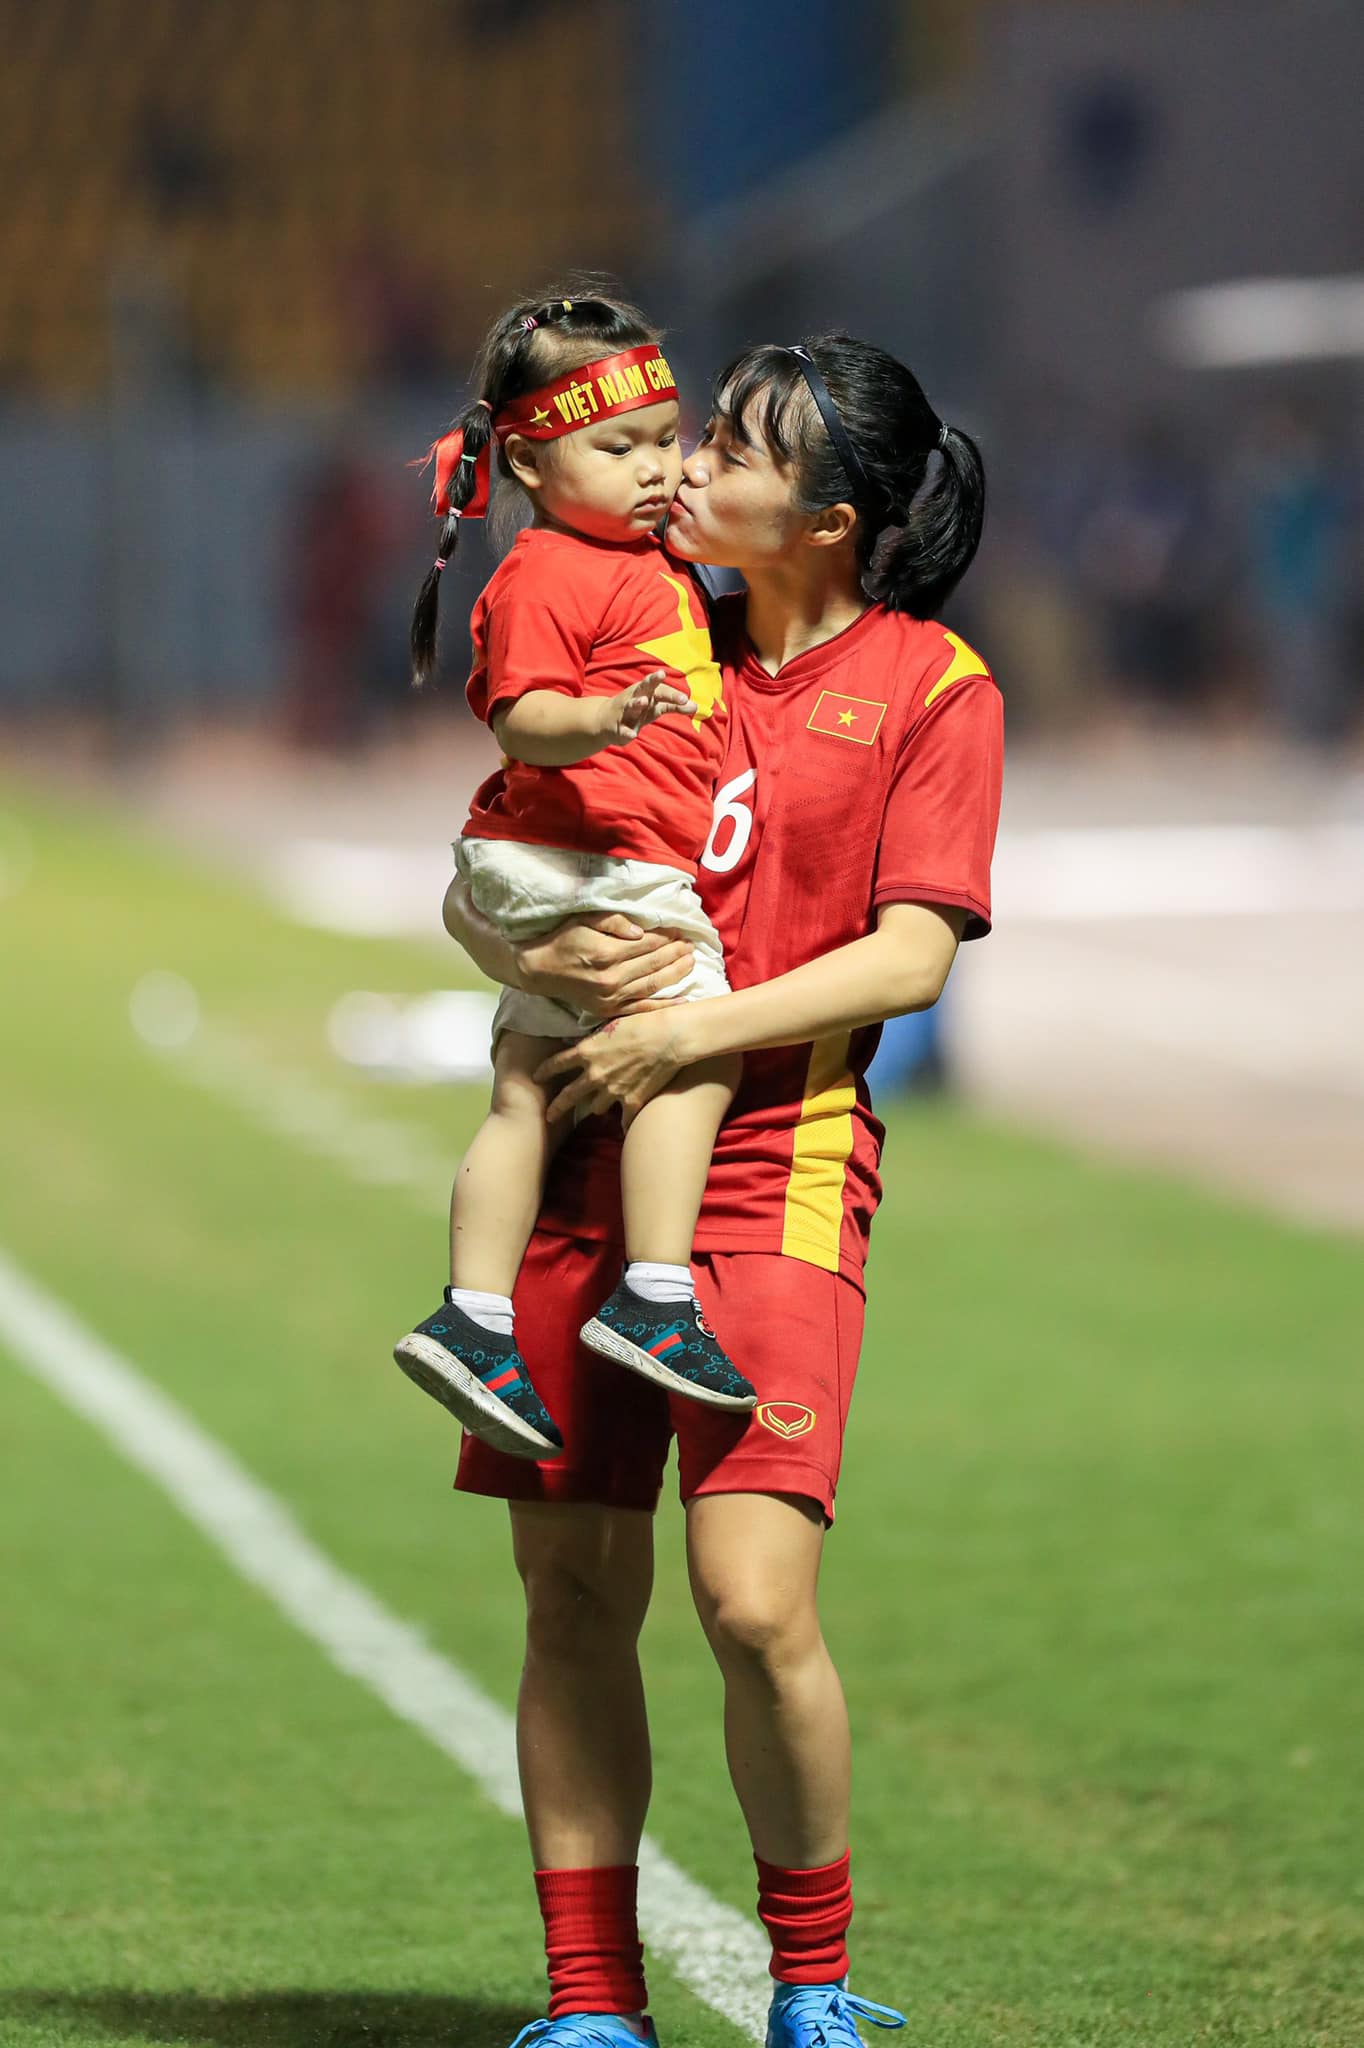 Có mẹ là tuyển thủ bóng đá nữ là cảm giác thế nào: Khoảnh khắc Hoàng Quỳnh ôm con chạy trên sân cỏ khiến ai cũng xúc động - Ảnh 2.